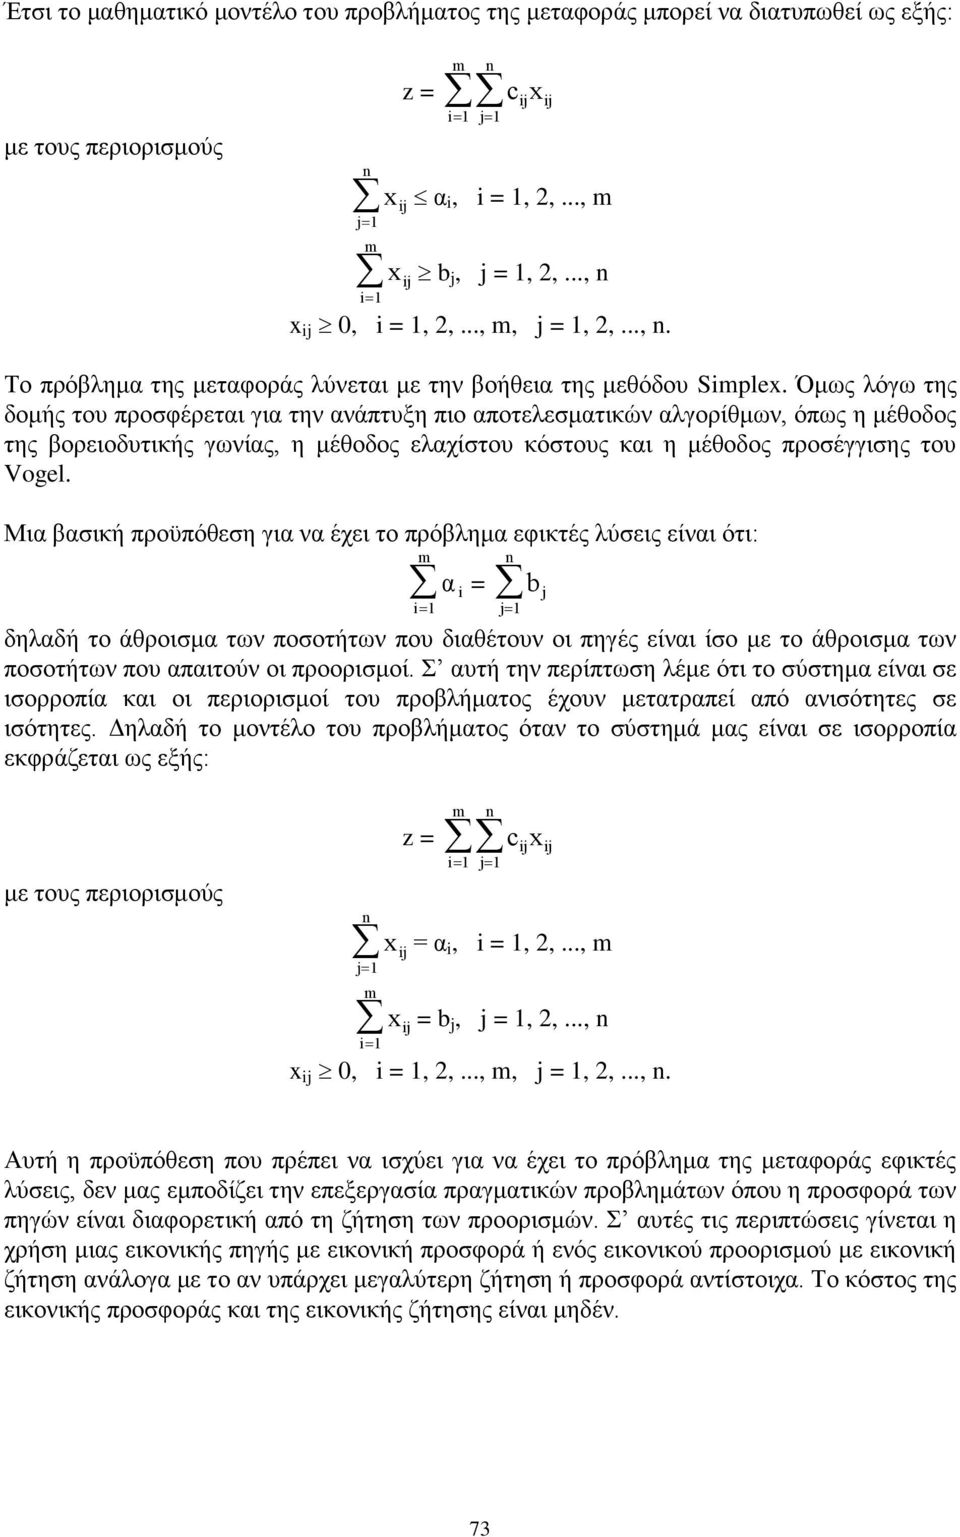 η μέθοδος προσέγγισης του Vogel Μια βασική προϋπόθεση για να έχει το πρόβλημα εφικτές λύσεις είναι ότι: α i = b j δηλαδή το άθροισμα των ποσοτήτων που διαθέτουν οι πηγές είναι ίσο με το άθροισμα των